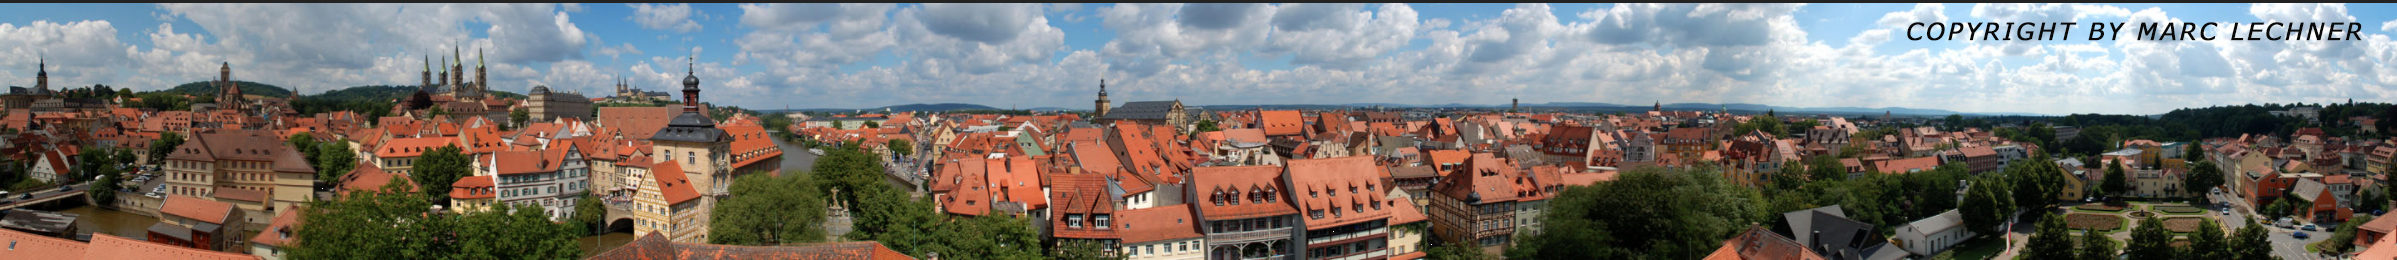 Bamberg-Open